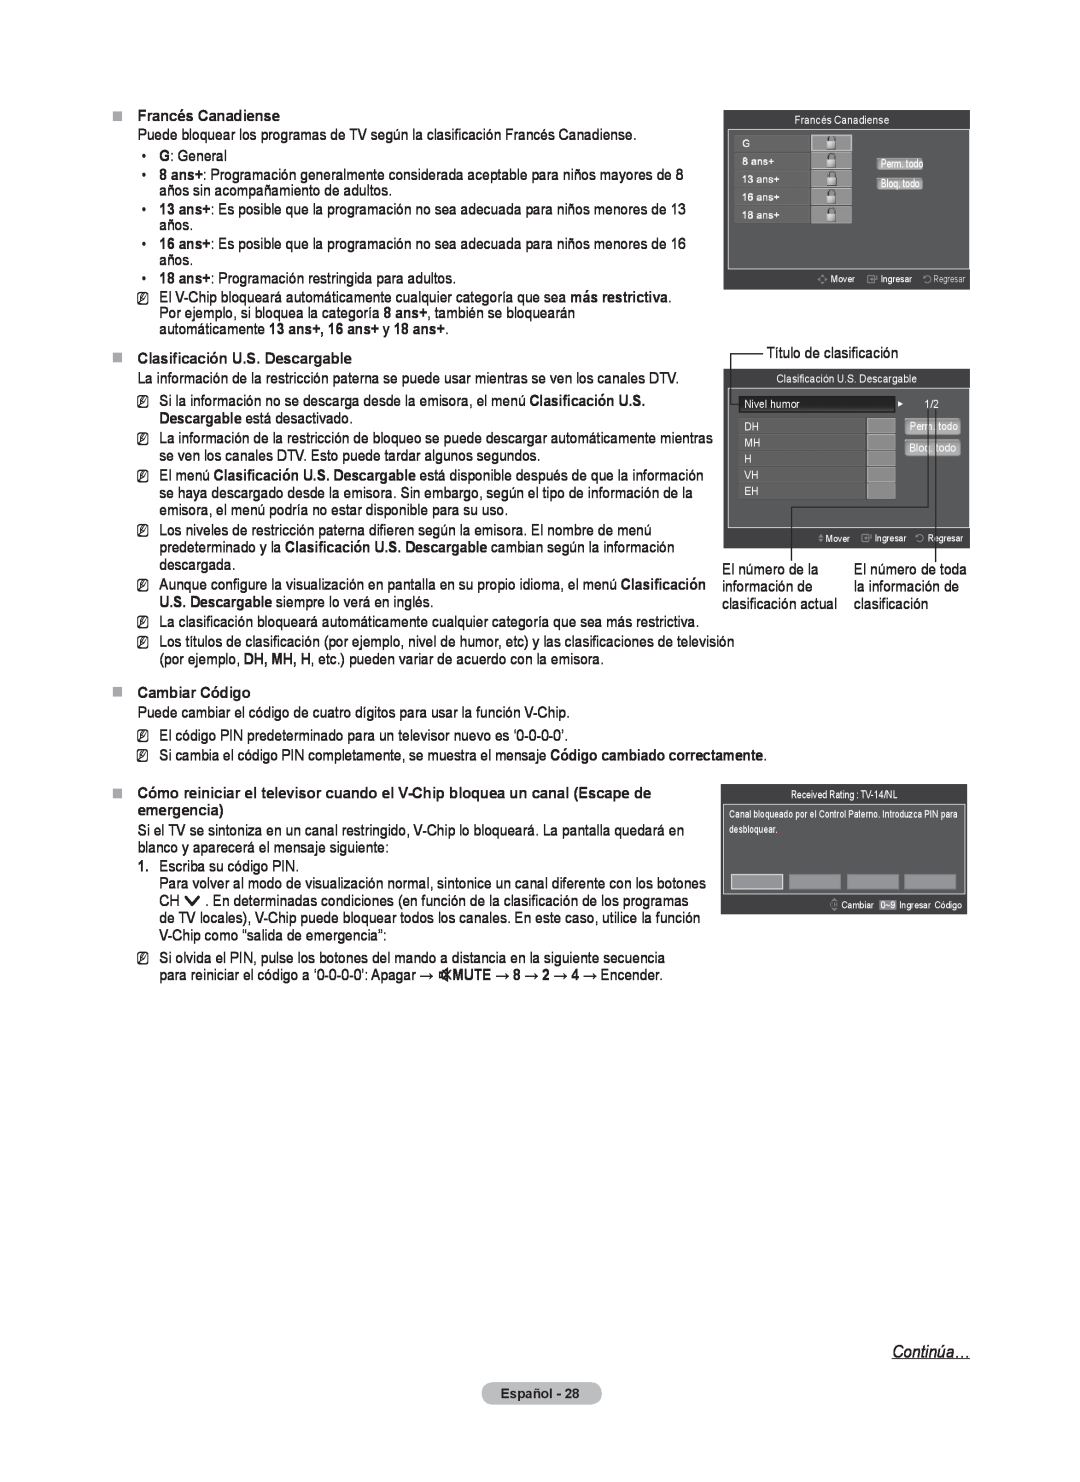 Samsung BN68-02426A-00 user manual Continúa…, „„ Francés Canadiense, „„ Clasificación U.S. Descargable, „„ Cambiar Código 